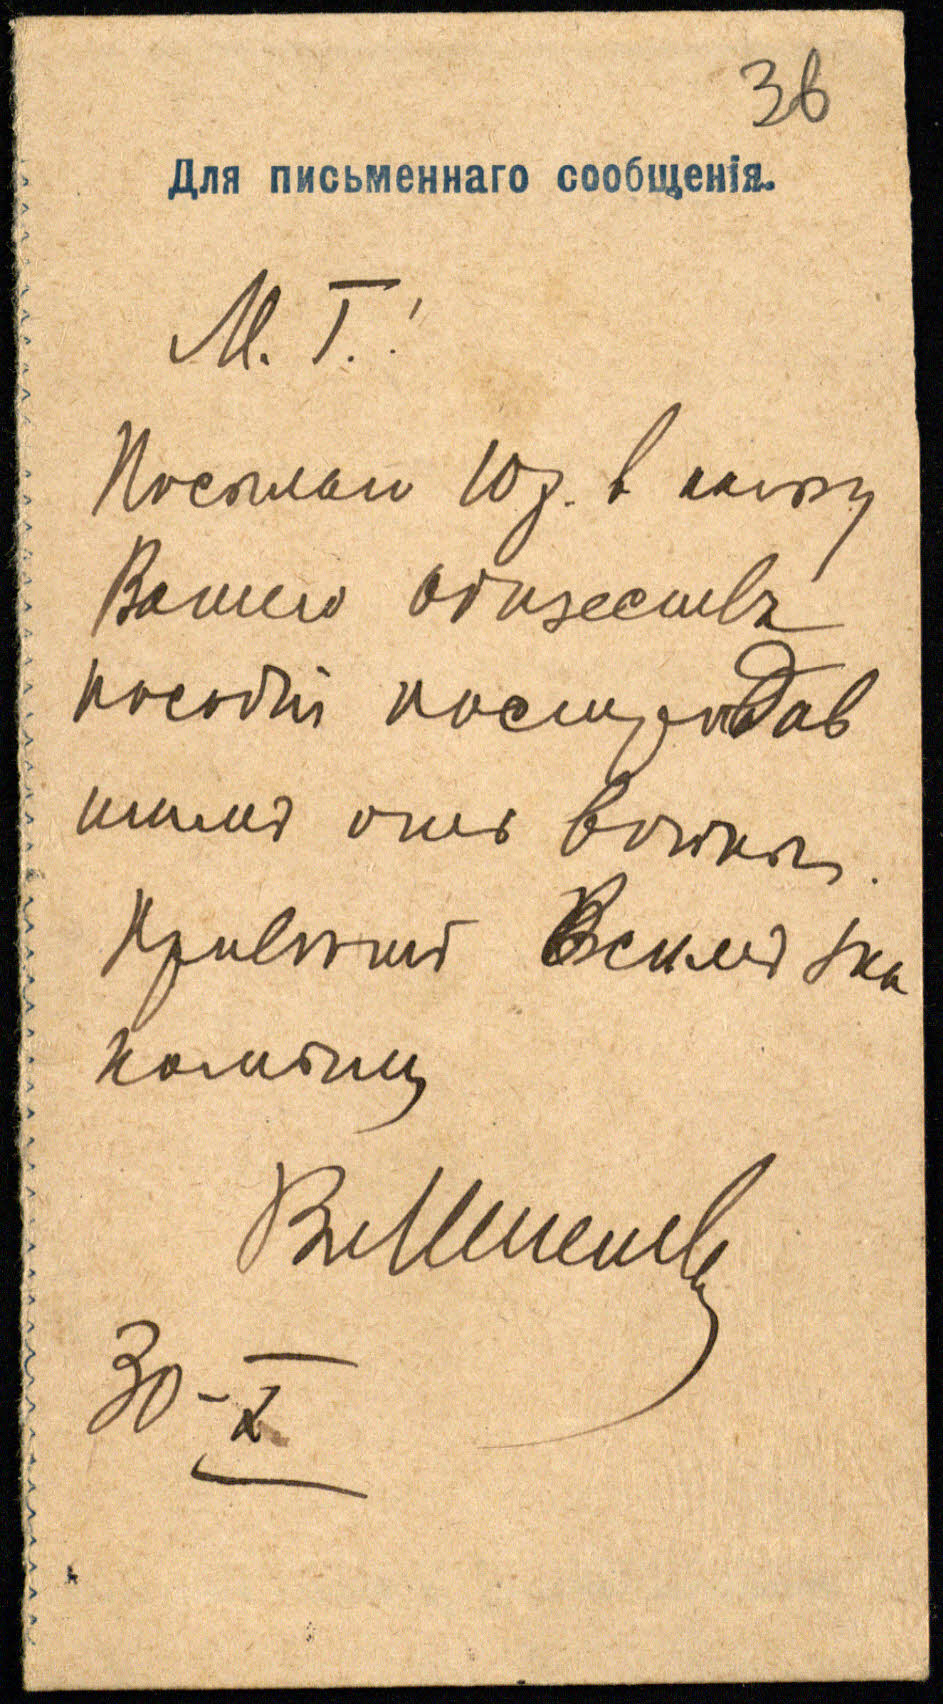 Rusijos kariuomenės gydytojo Vlado Ingelevičiaus siųsta 10 rublių perlaida vienai iš Vilniaus lietuvių organizacijų. 1914 10 30